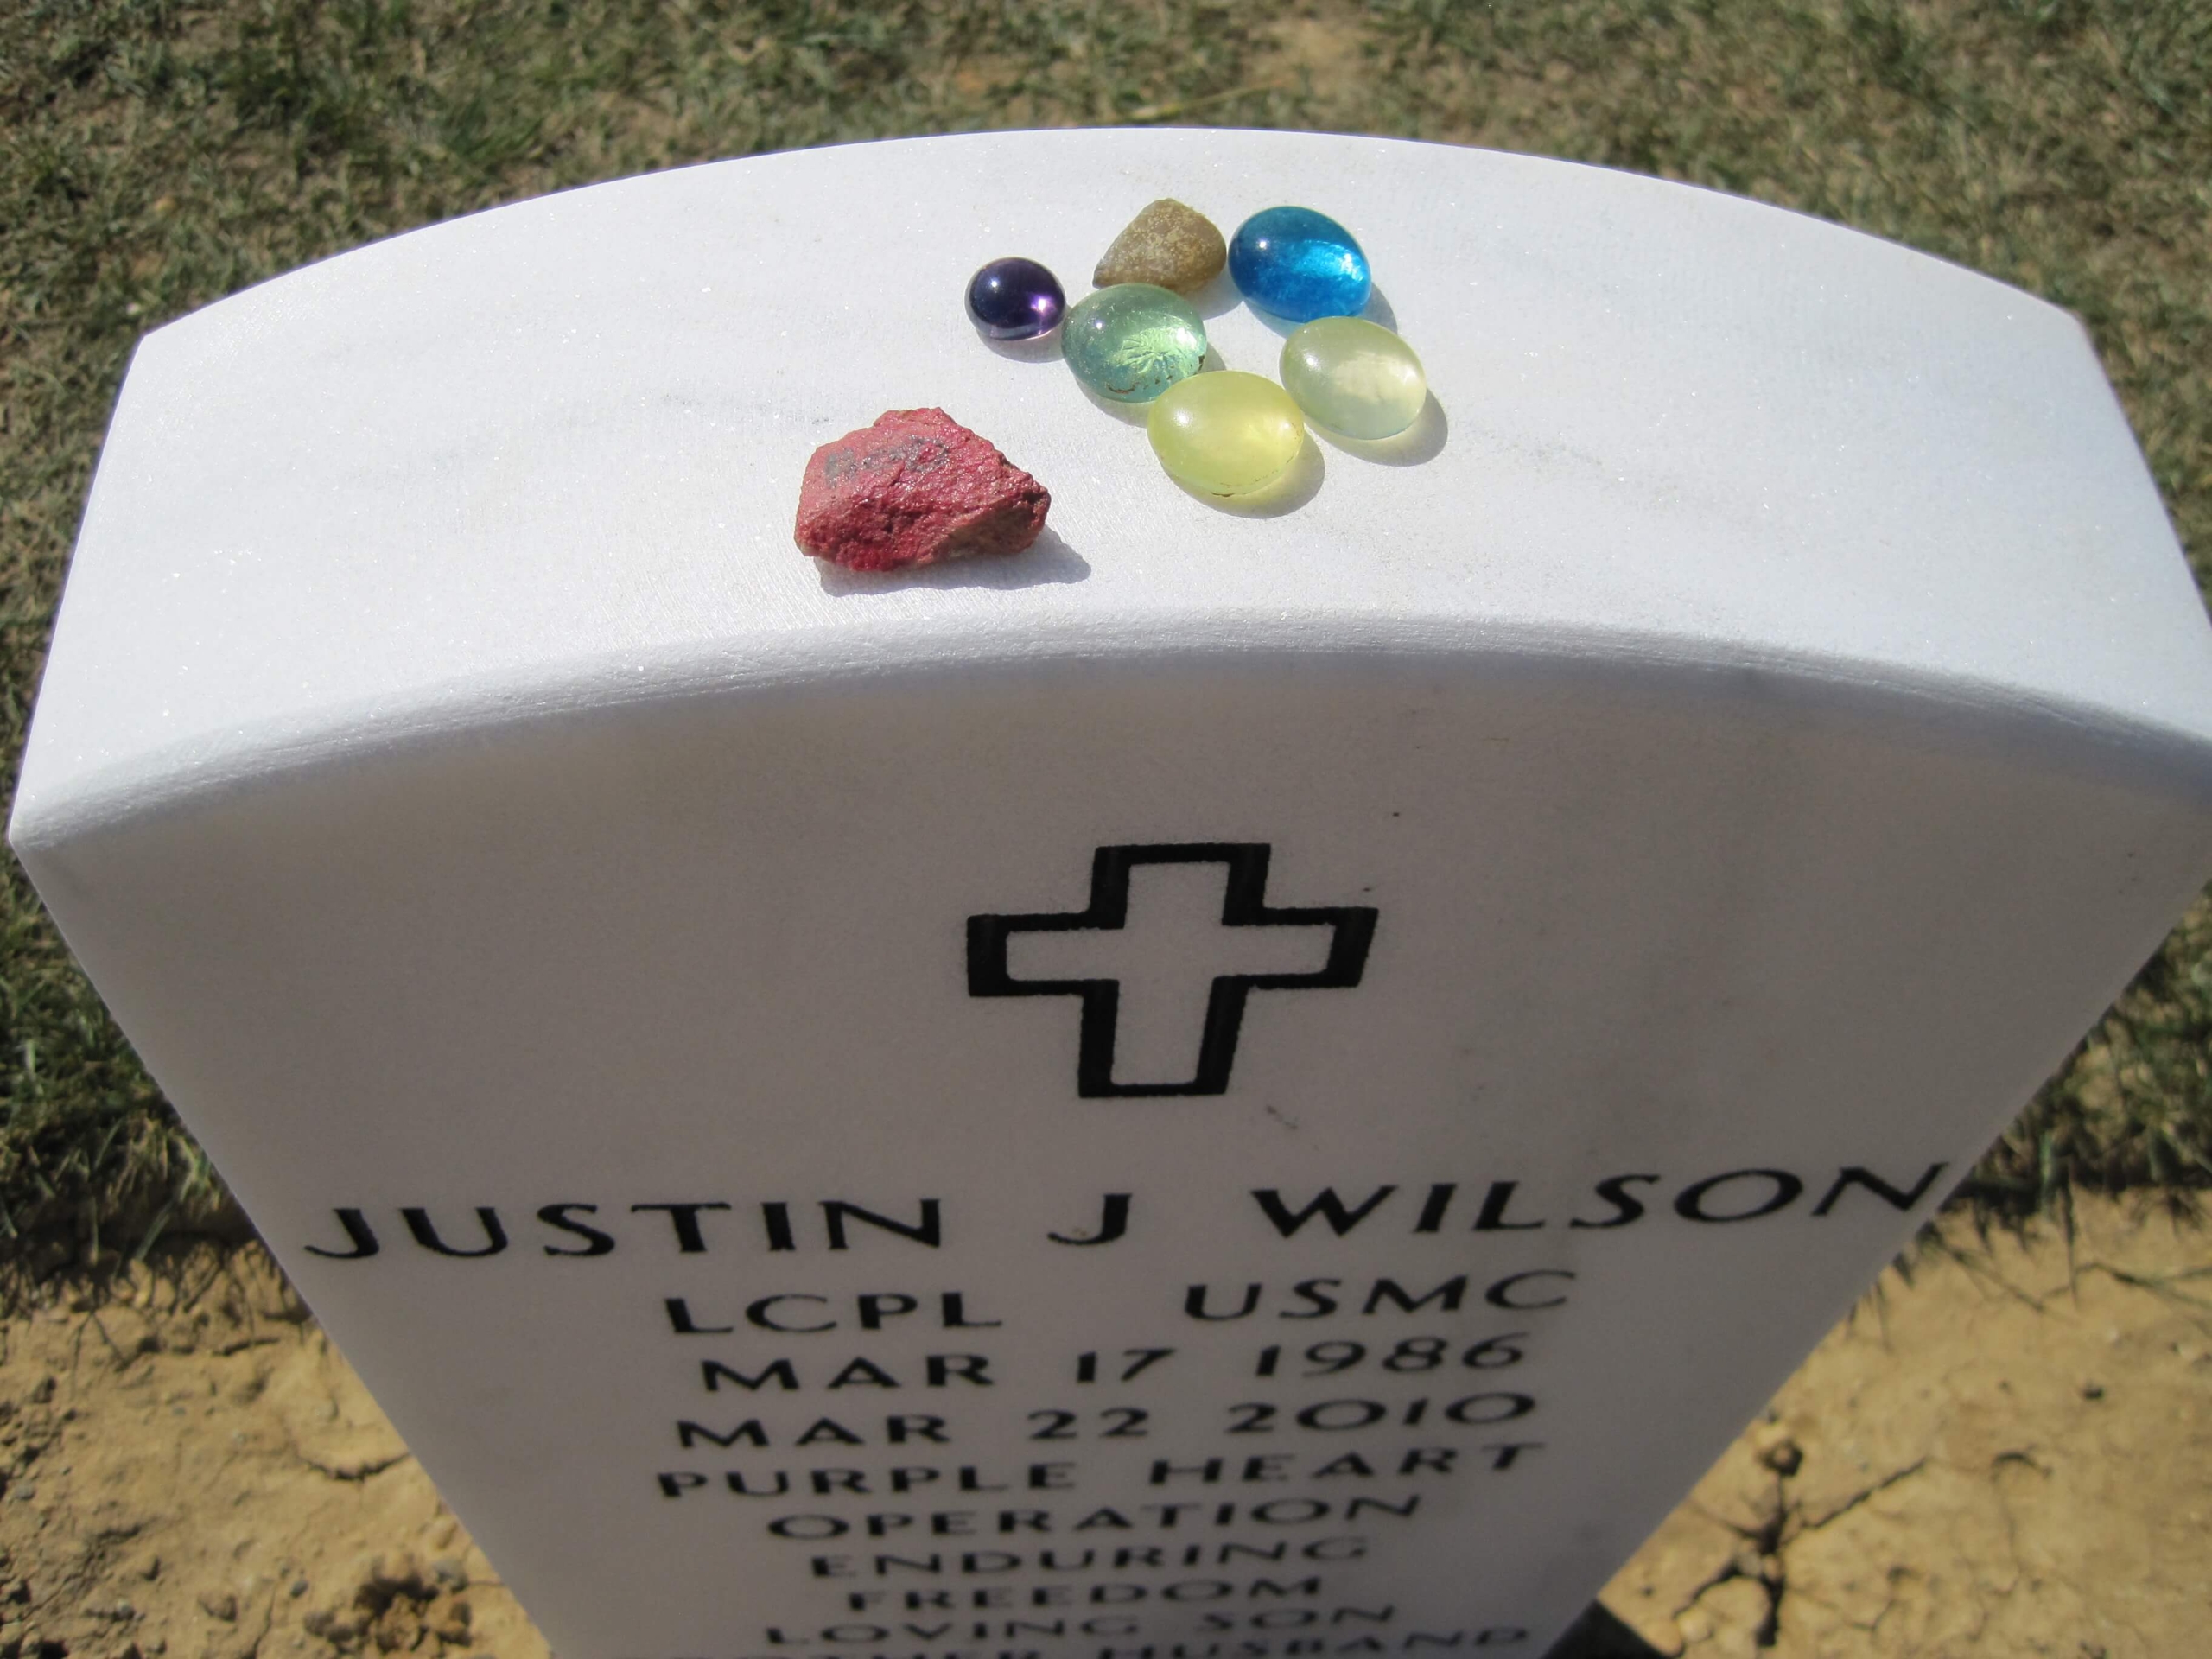 jjwilson-gravesite-photo-by-eileen-horan-september-2010-002